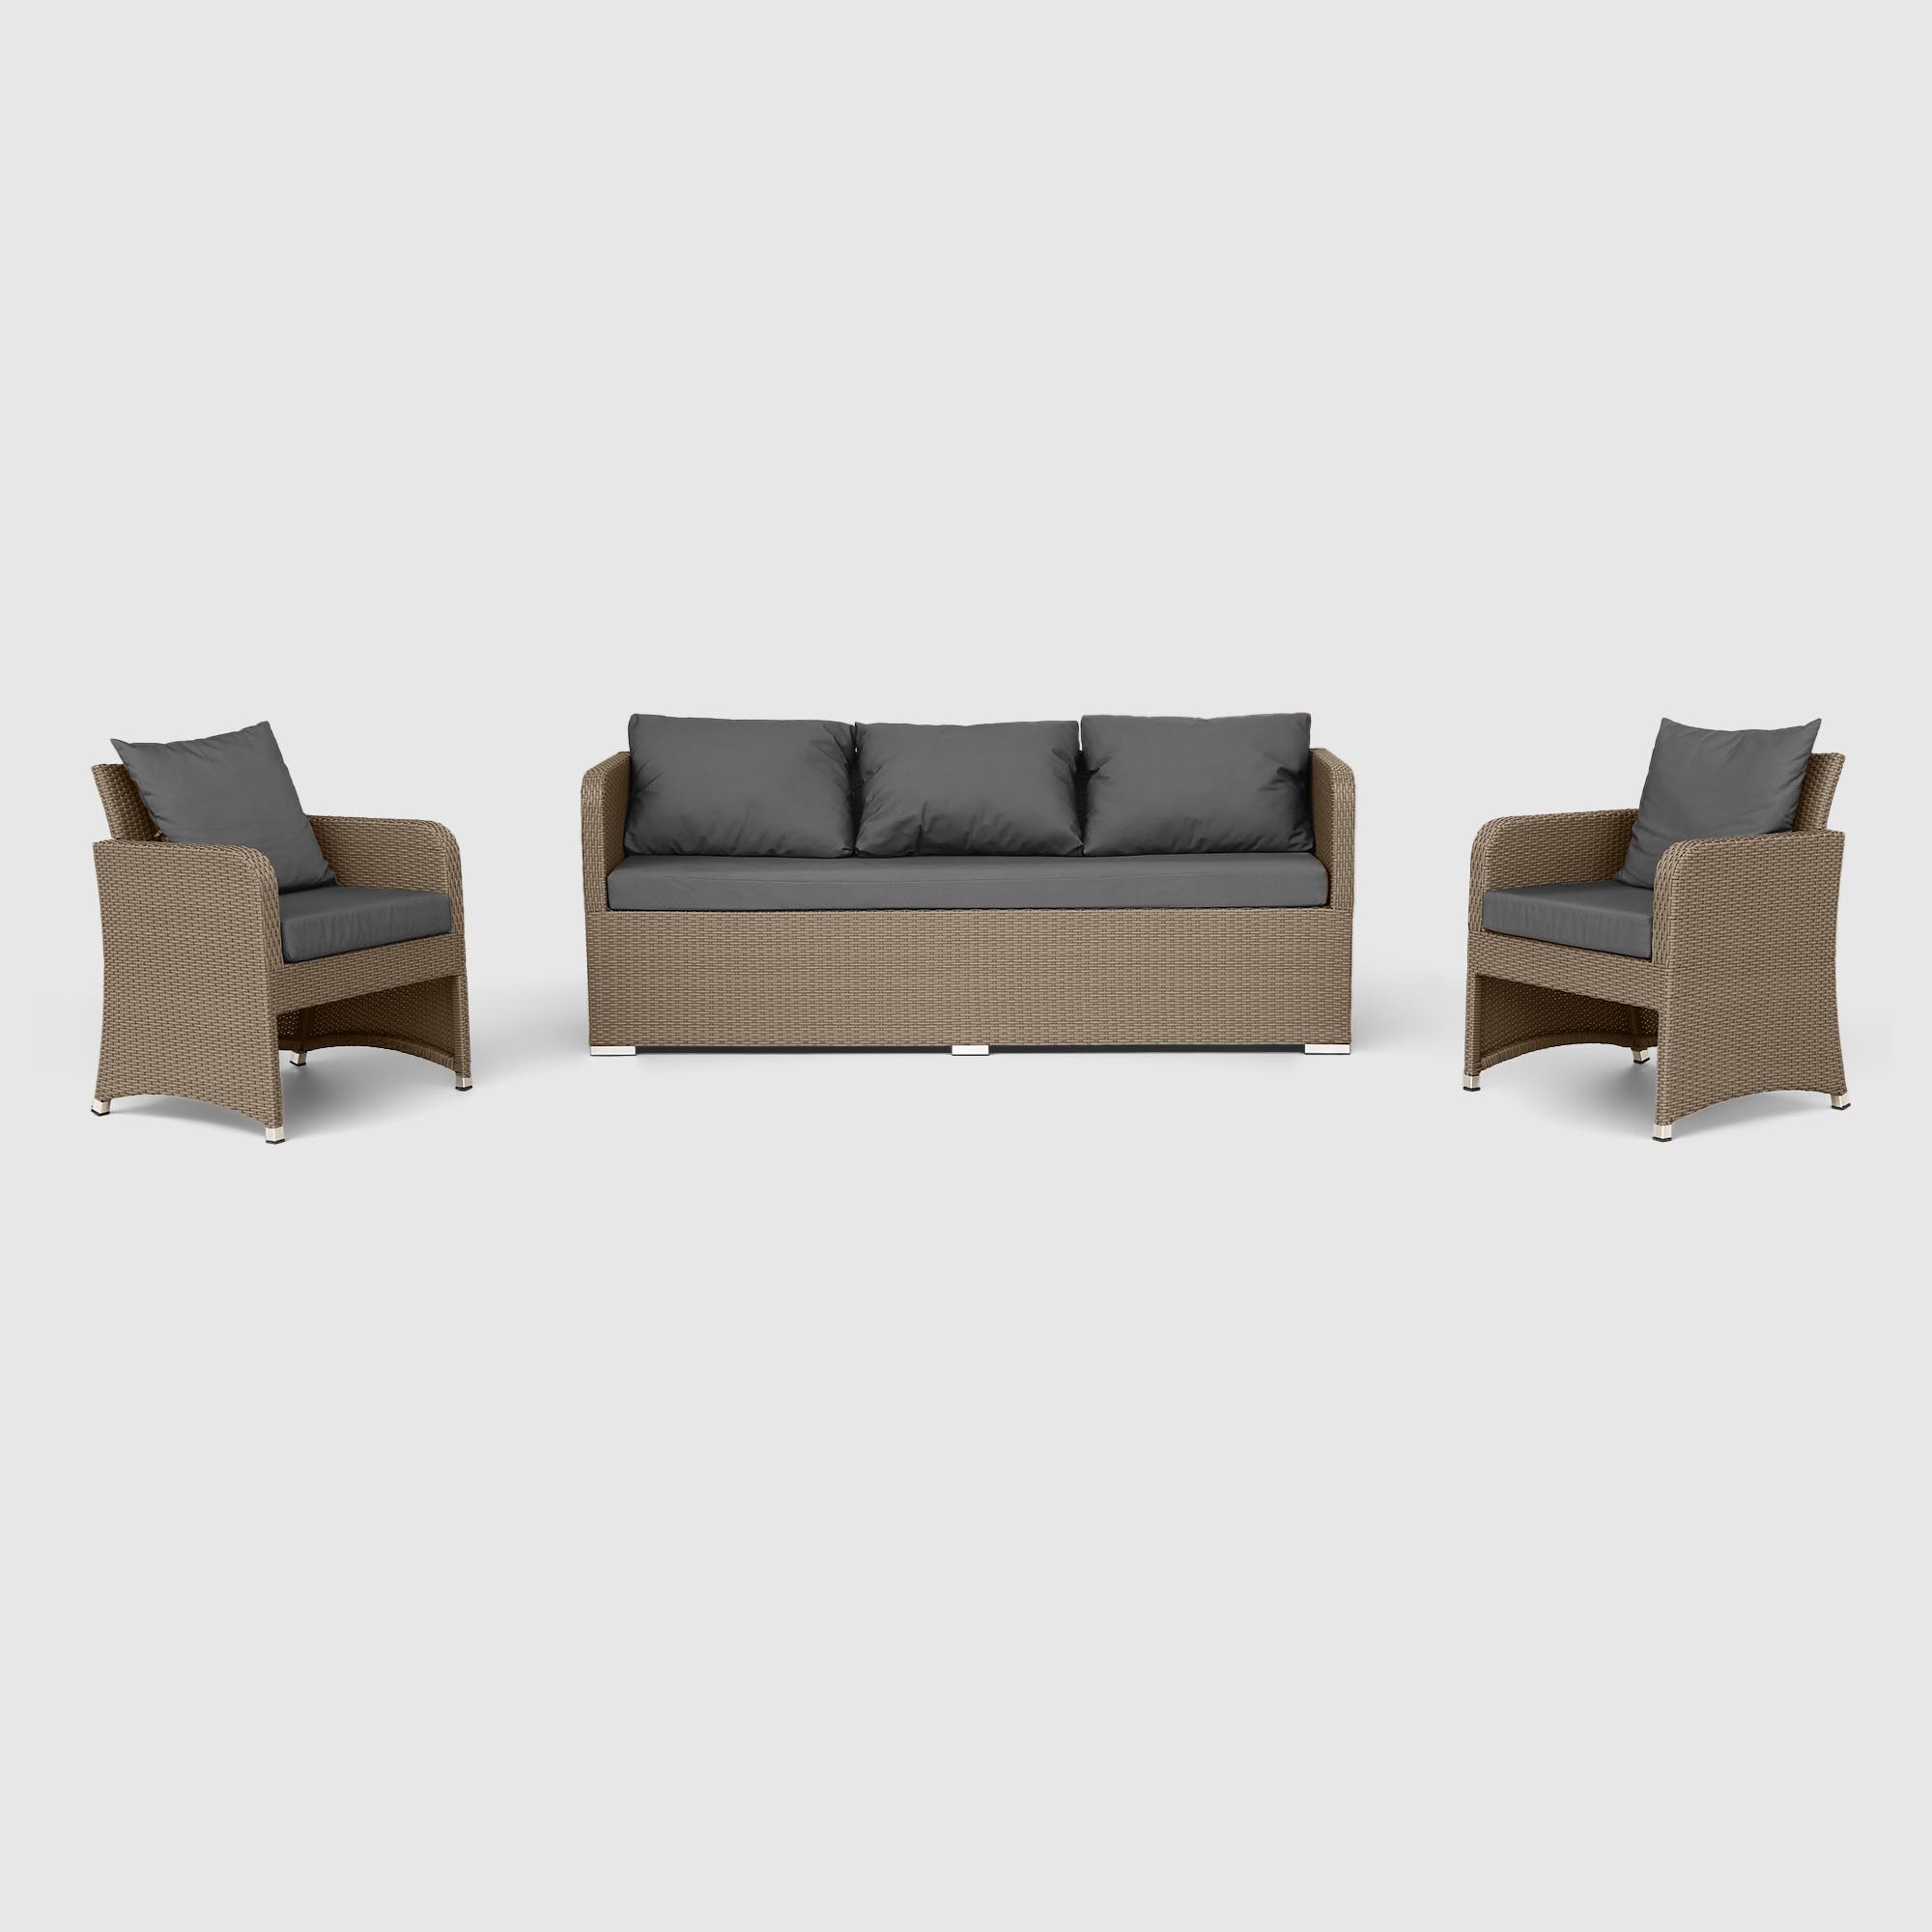 Комплект мебели NS Rattan LWS 21 коричневый с серым 3 предмета комплект мебели ns rattan calendula 9 предметов